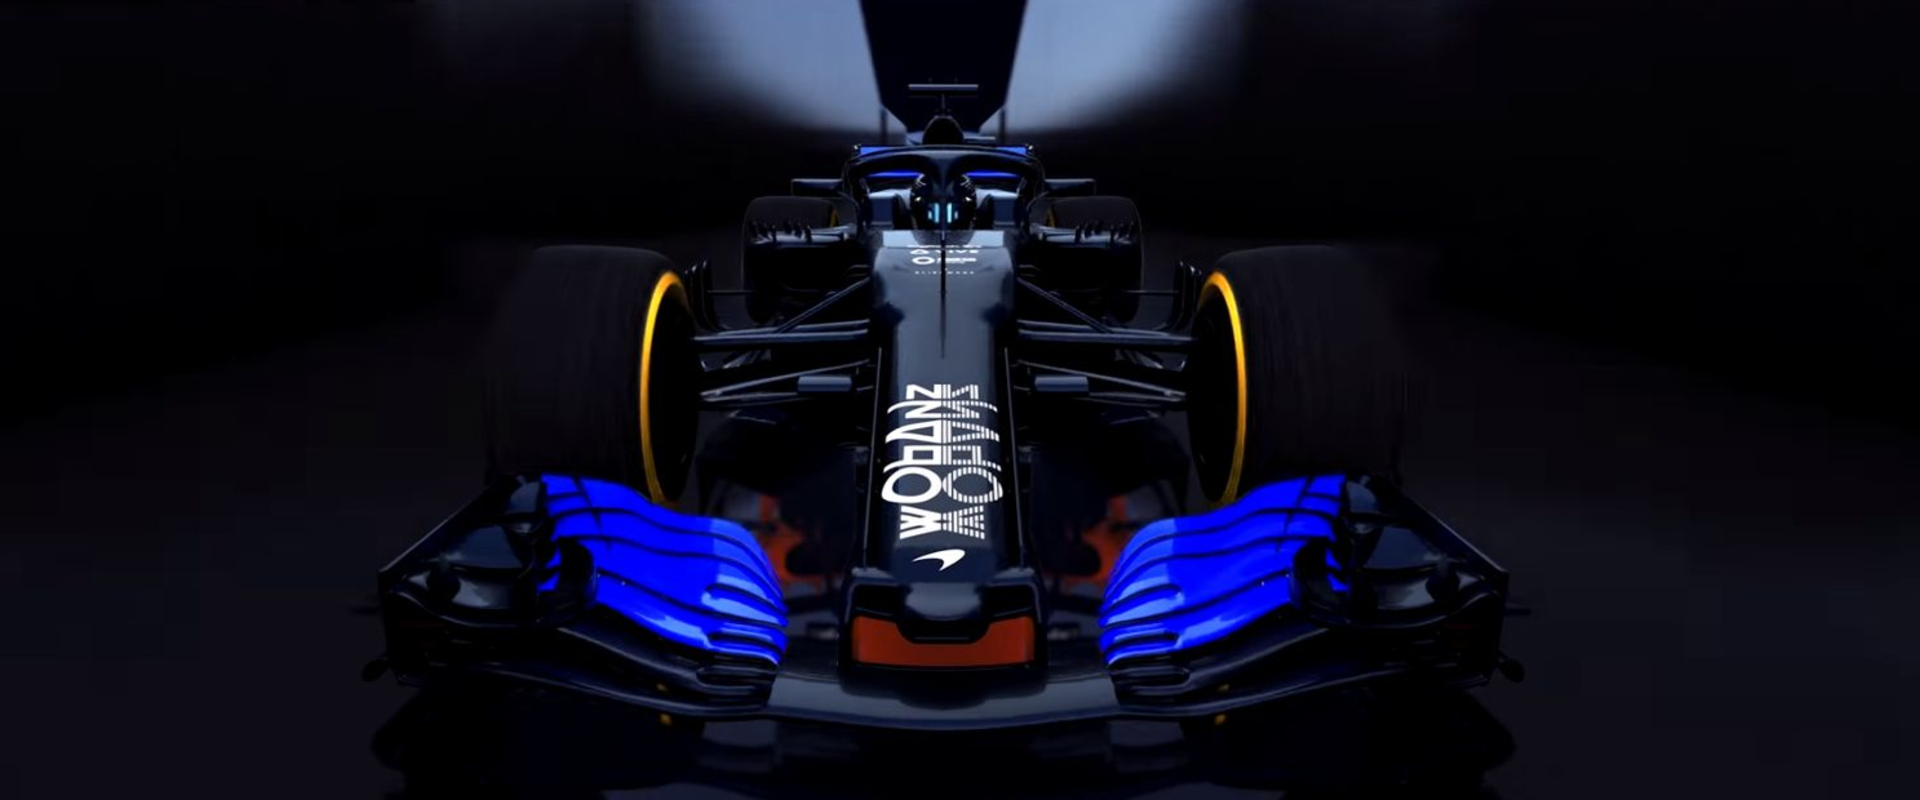 Saját versenysorozatot indít a McLaren és a győztesnek állást is ad